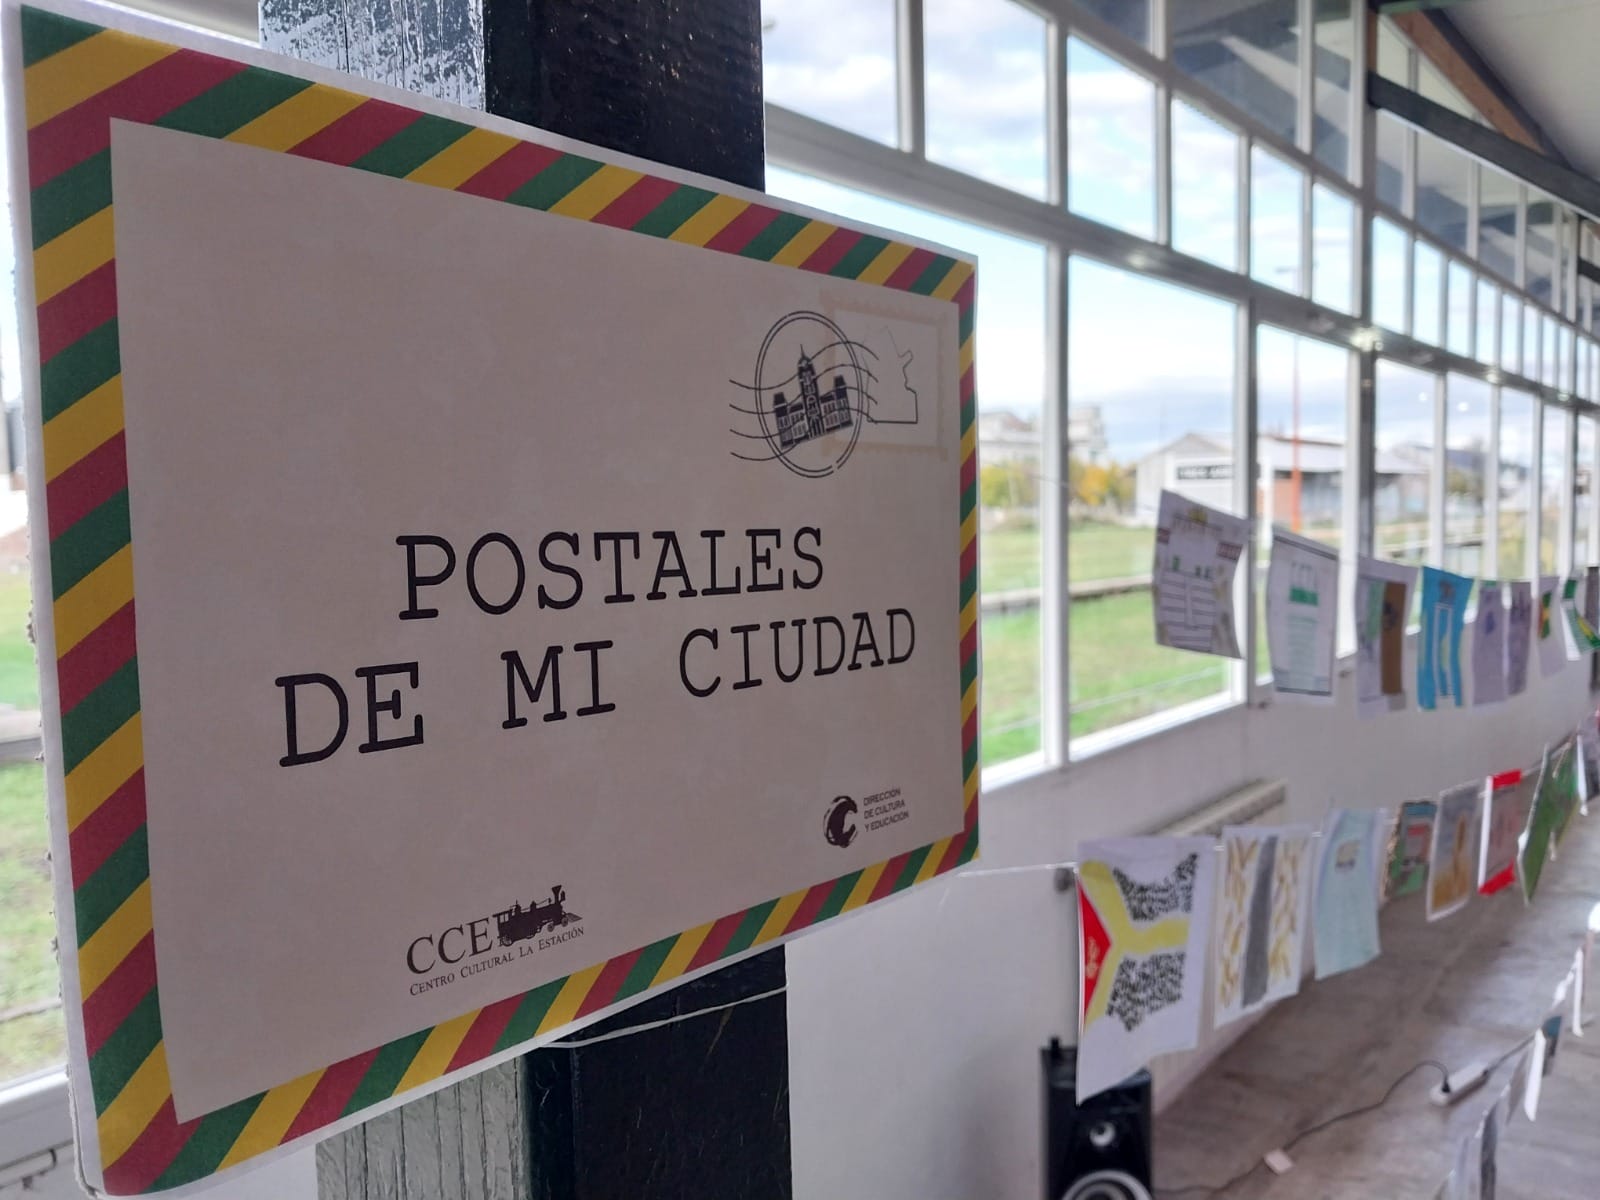 Invitan a visitar la muestra “Postales de mi ciudad” en La Estación